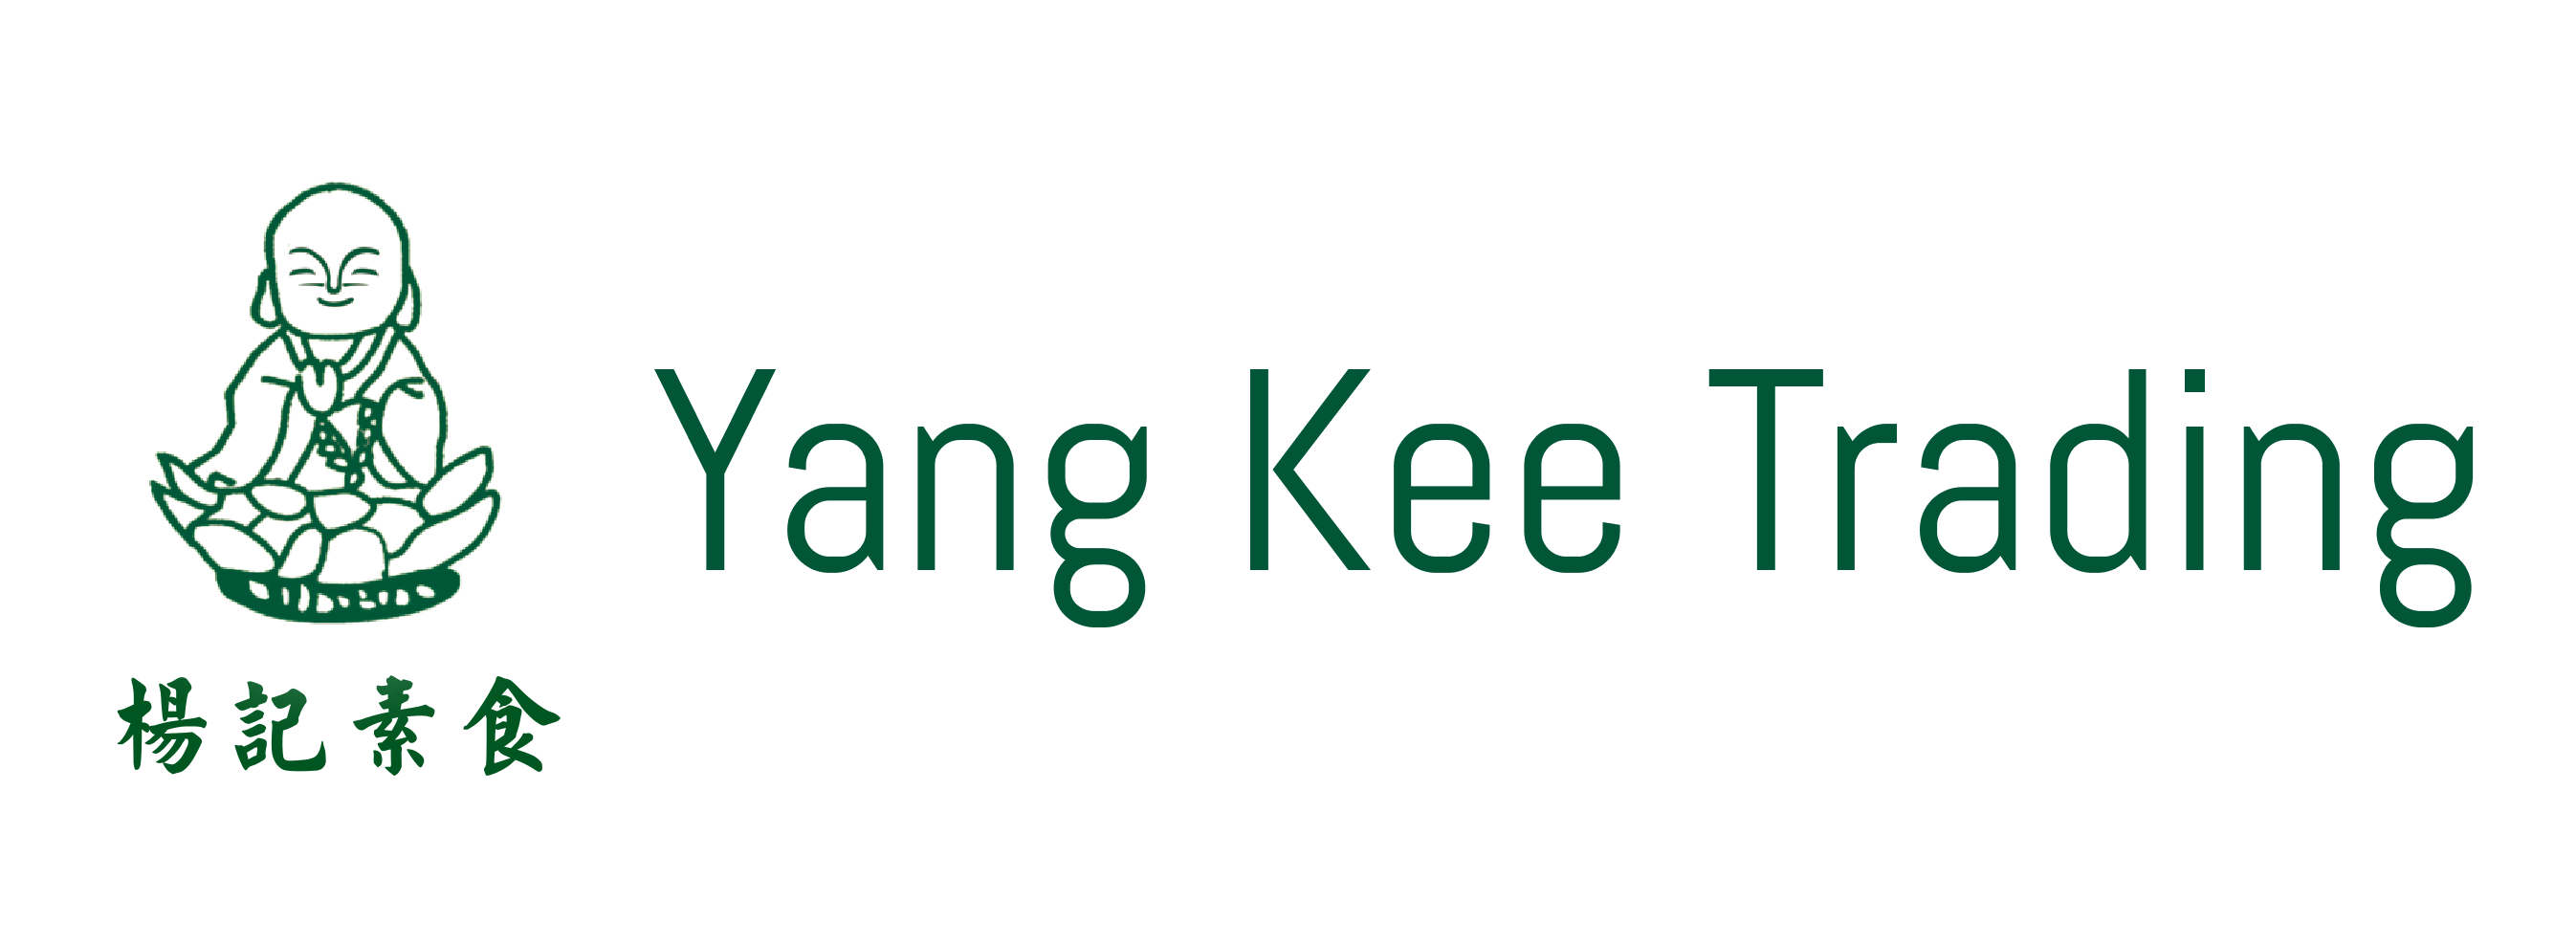 Yang Kee Trading